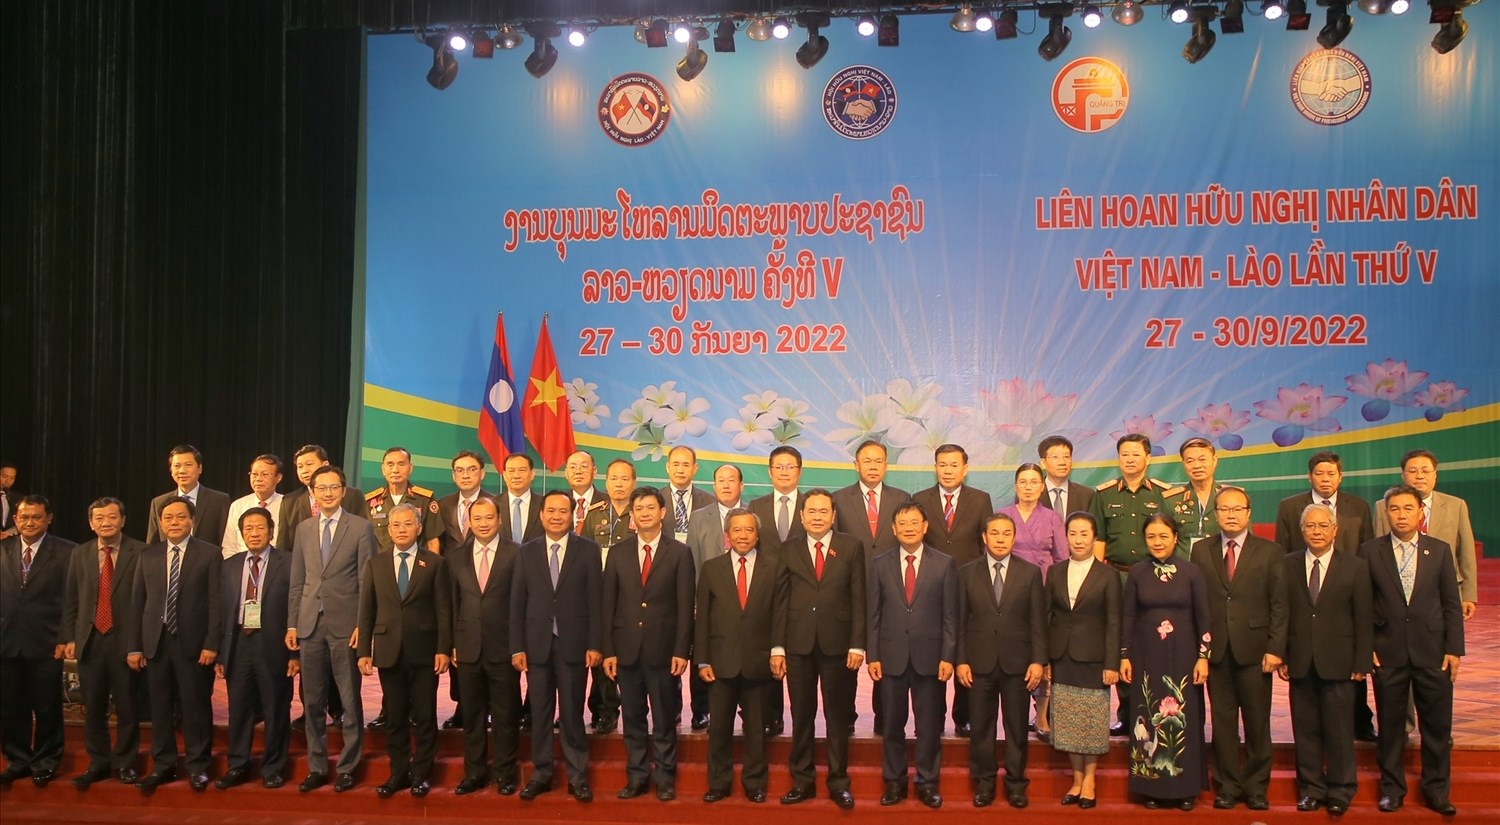 Đại biểu hai nước Việt Nam-Lào chụp ảnh lưu niệm tại lễ khai mạc